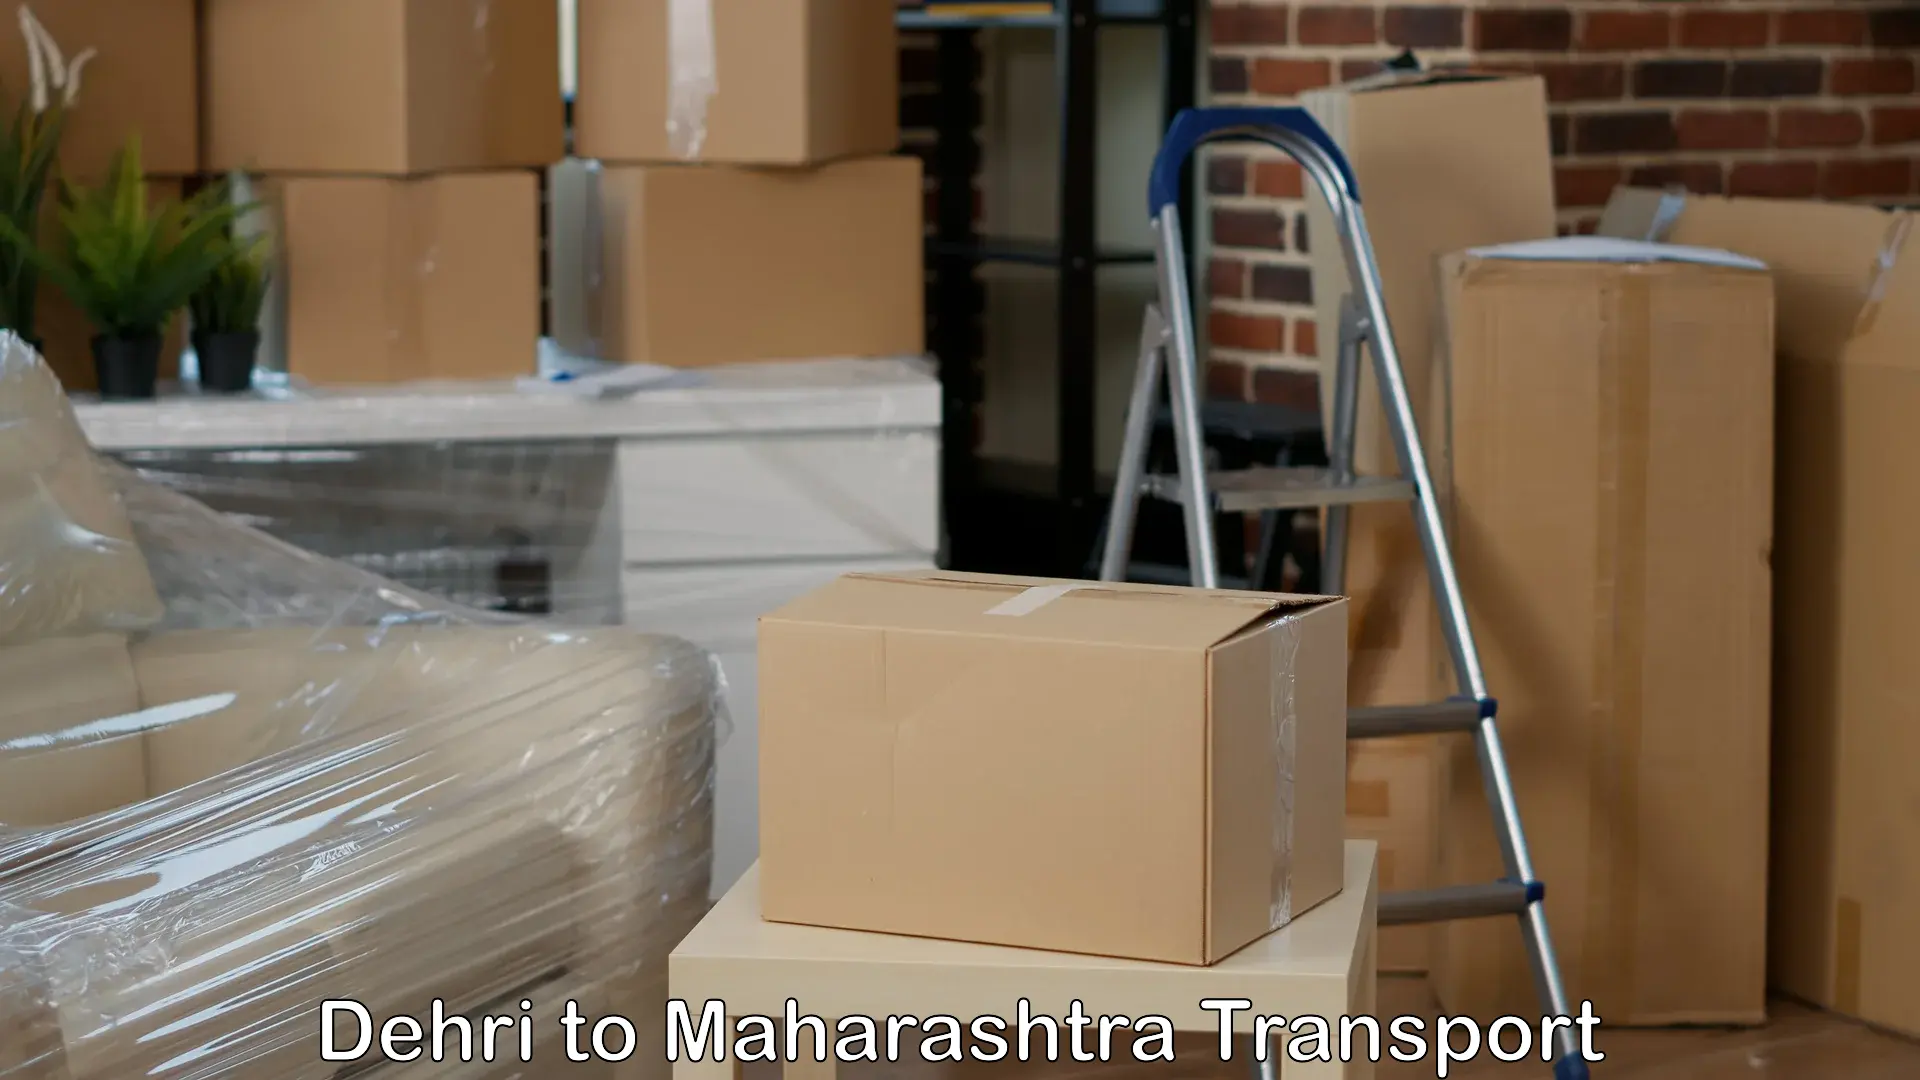 Truck transport companies in India Dehri to Mumbai Port